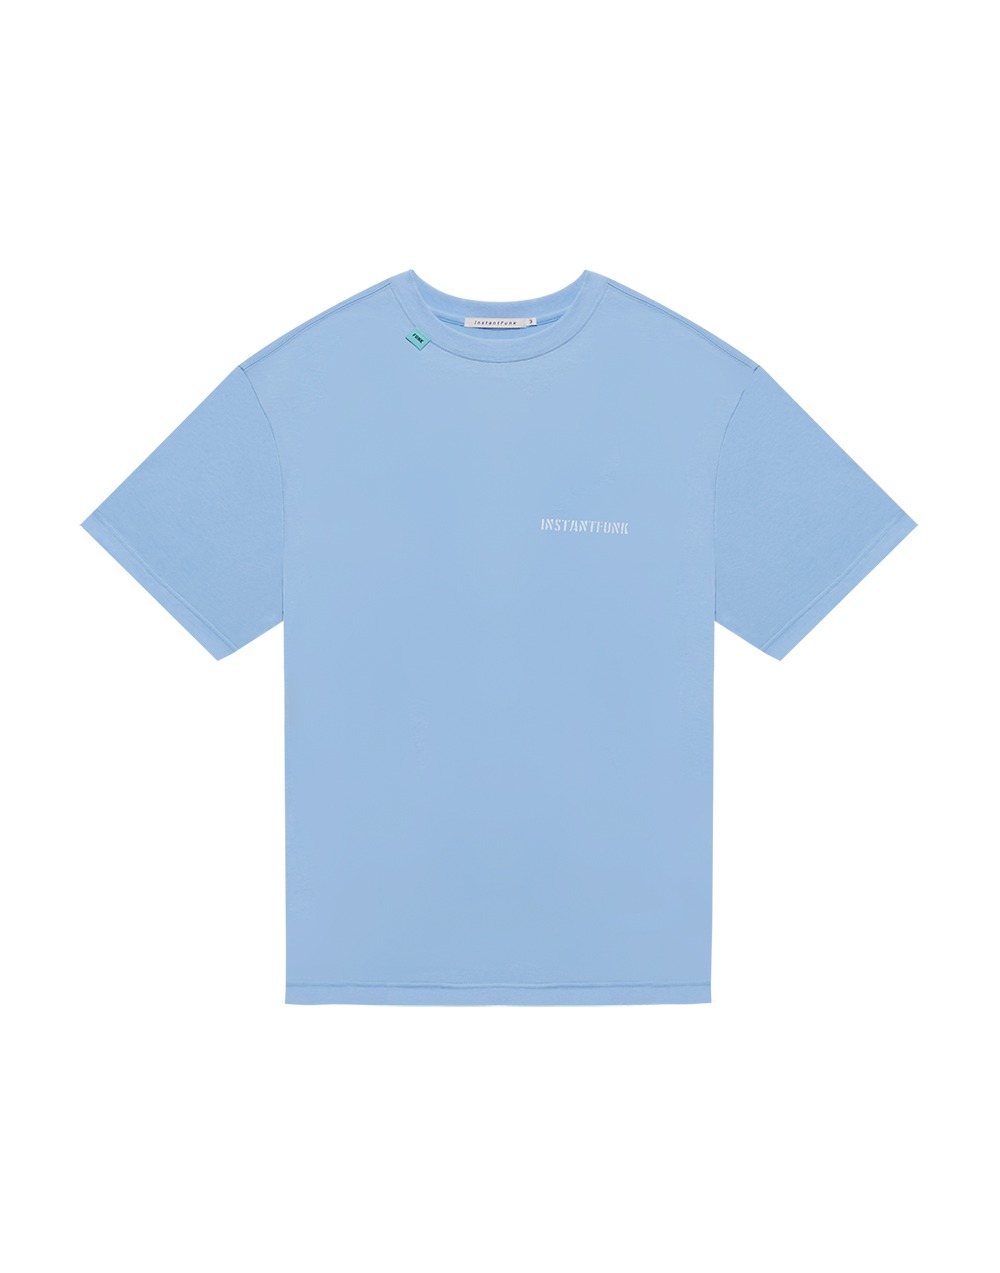 21SS 에센셜 로고 티셔츠 - 블루